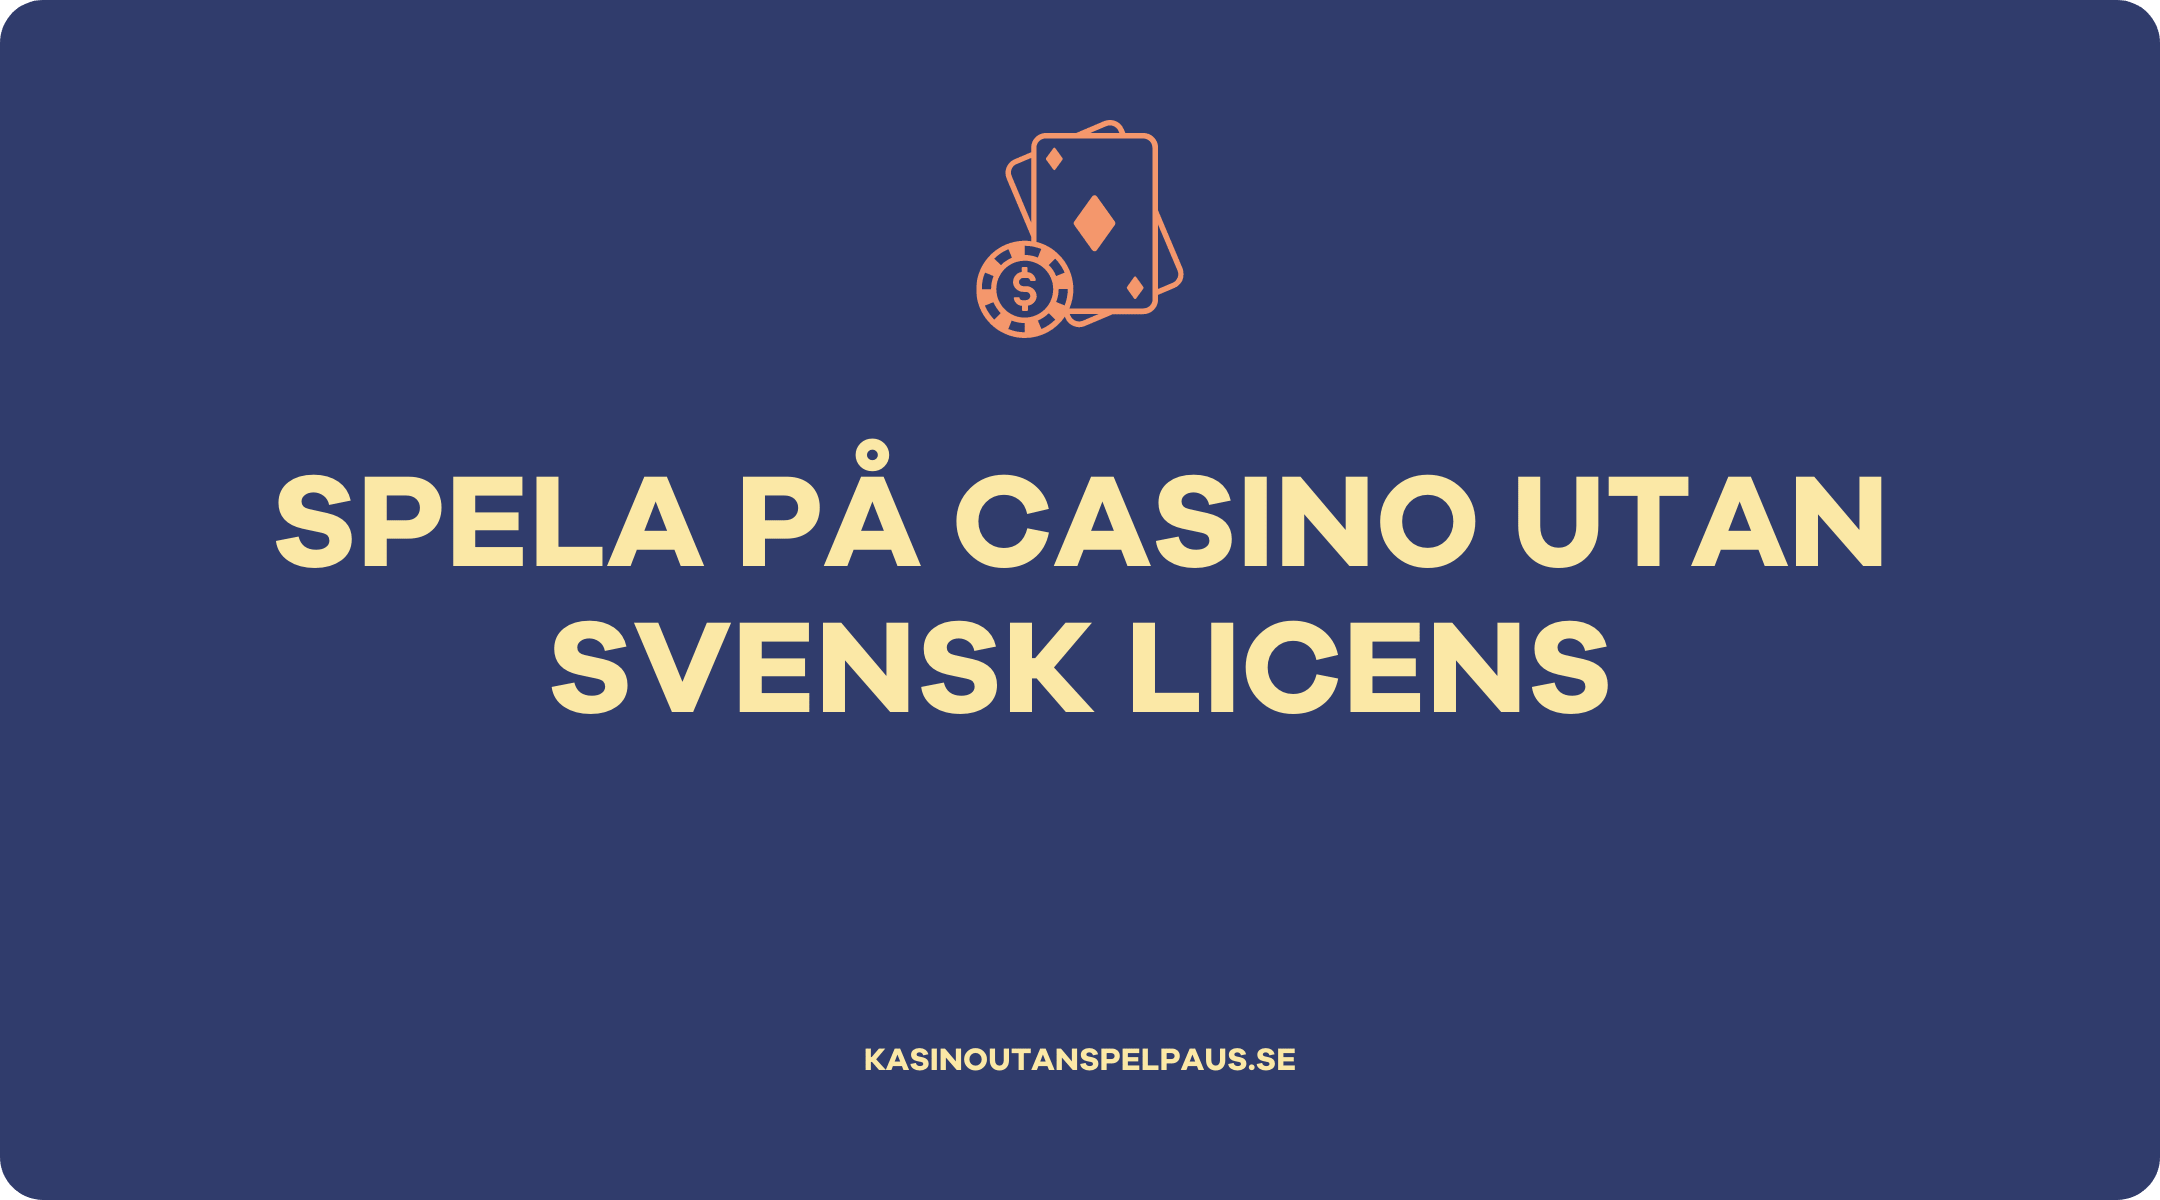 Spela på casino utan svensk licens